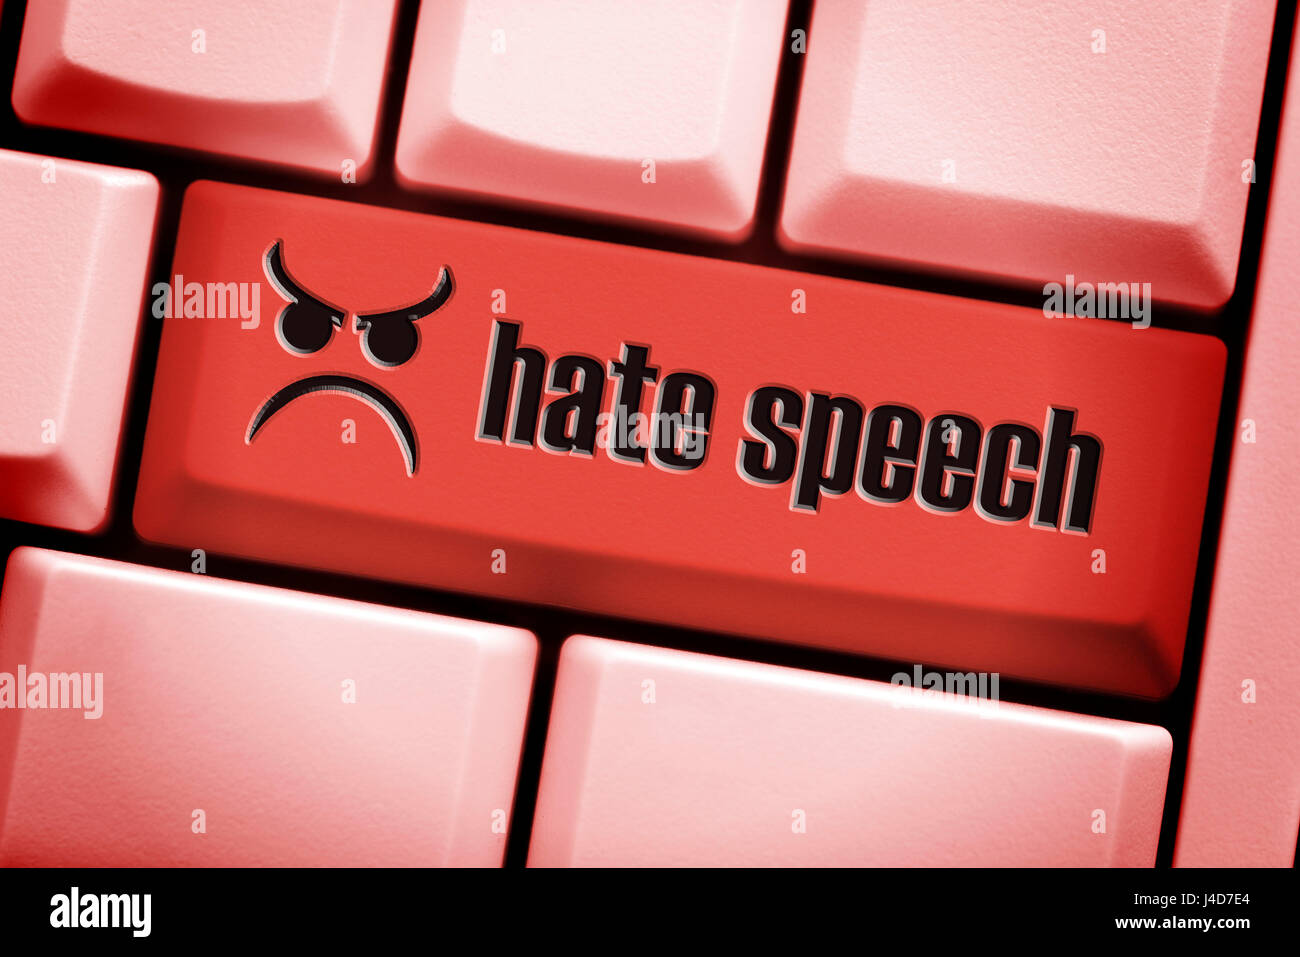 Chiave del computer con l'etichetta di odio, di odio parlando su reti sociali, Computertaste mit der Aufschrift odio, Hassreden in sozialen Netzwe Foto Stock